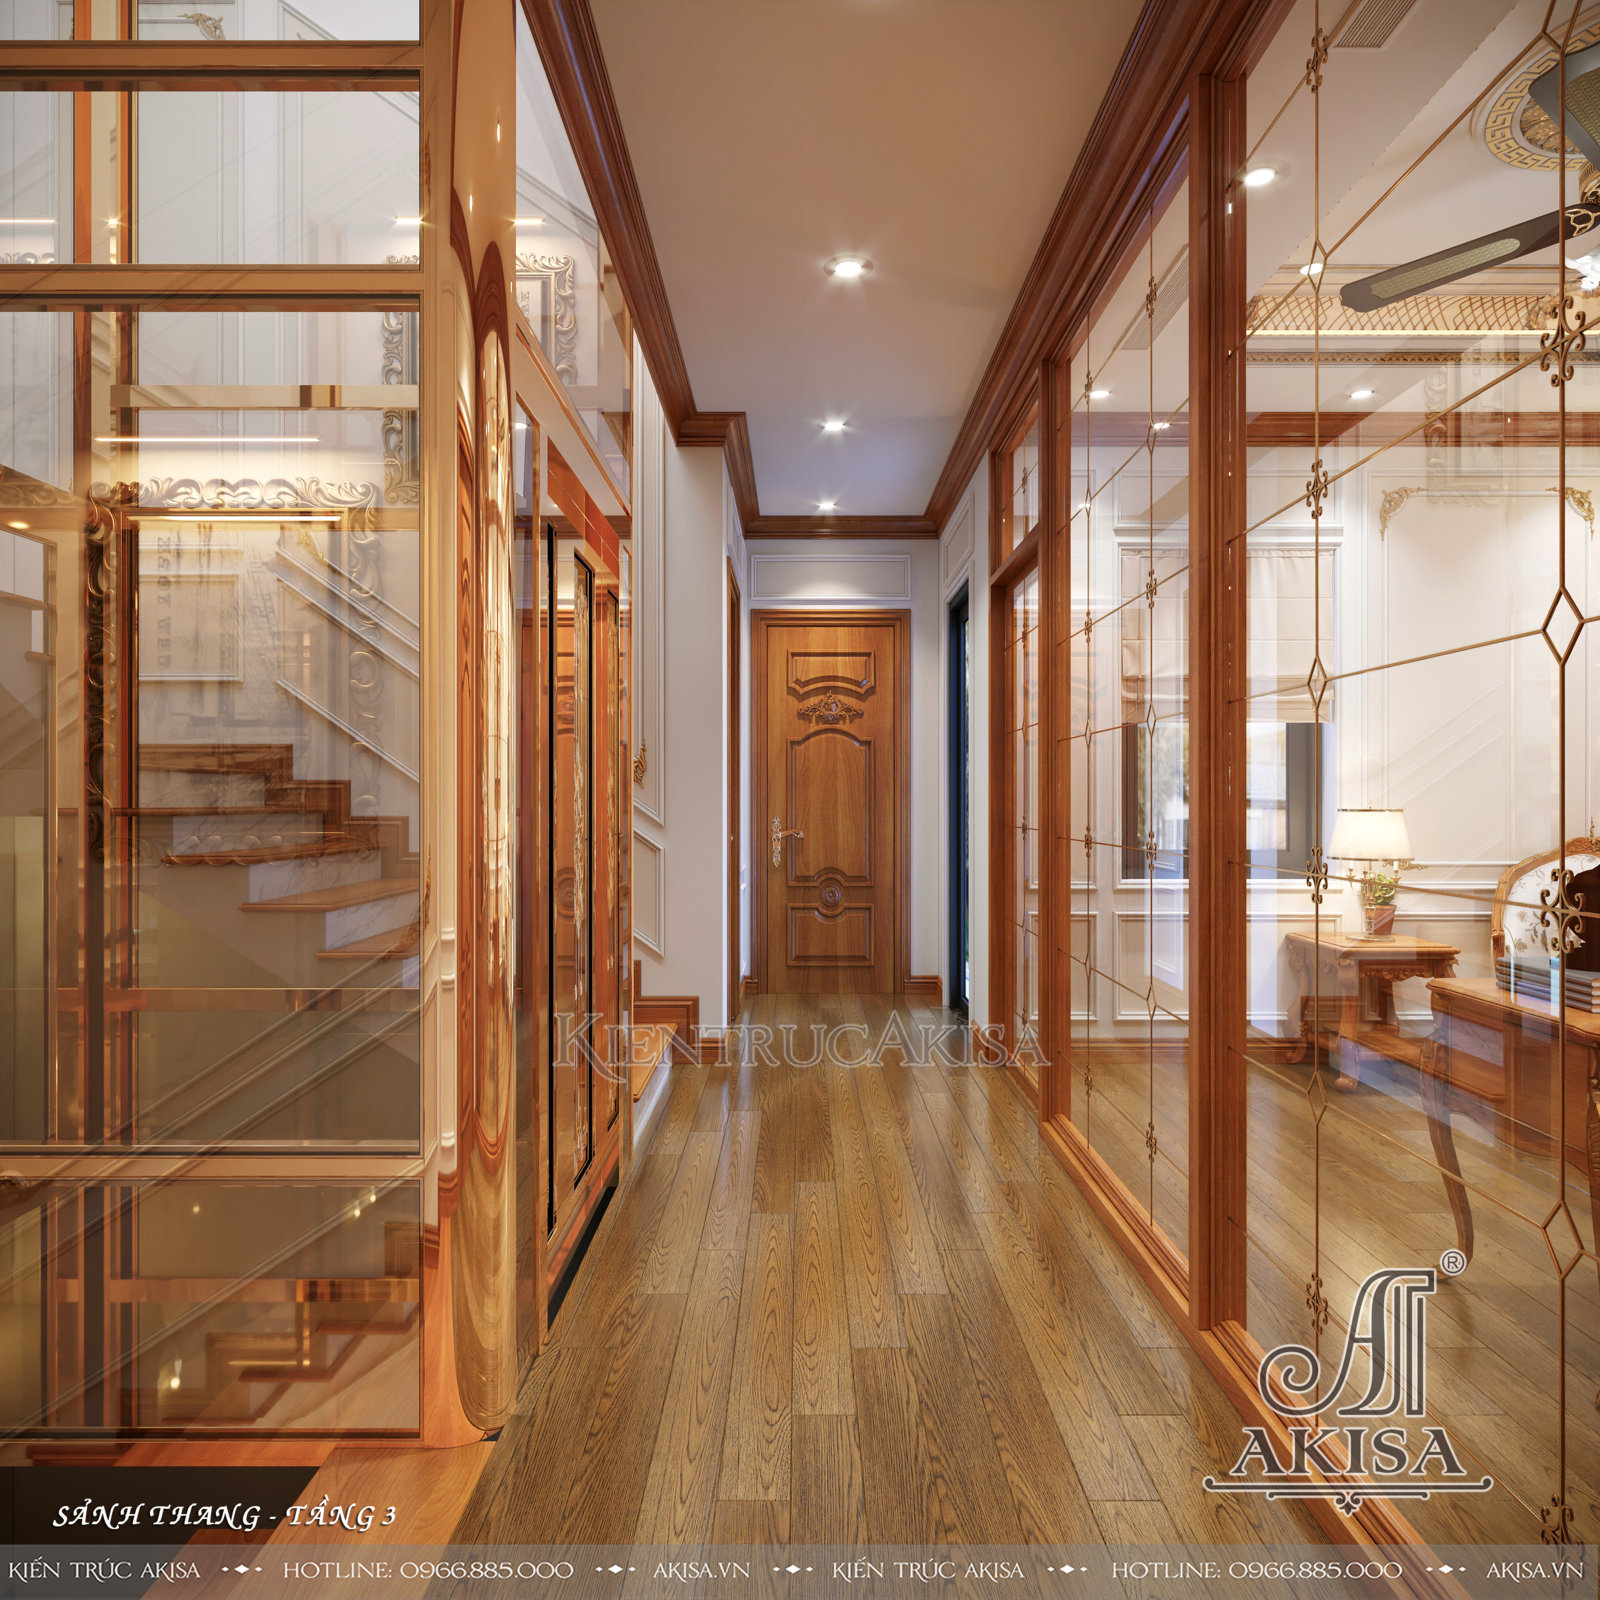 Thiết kế nội thất gỗ gõ đỏ biệt thự tân cổ điển - Sảnh thang